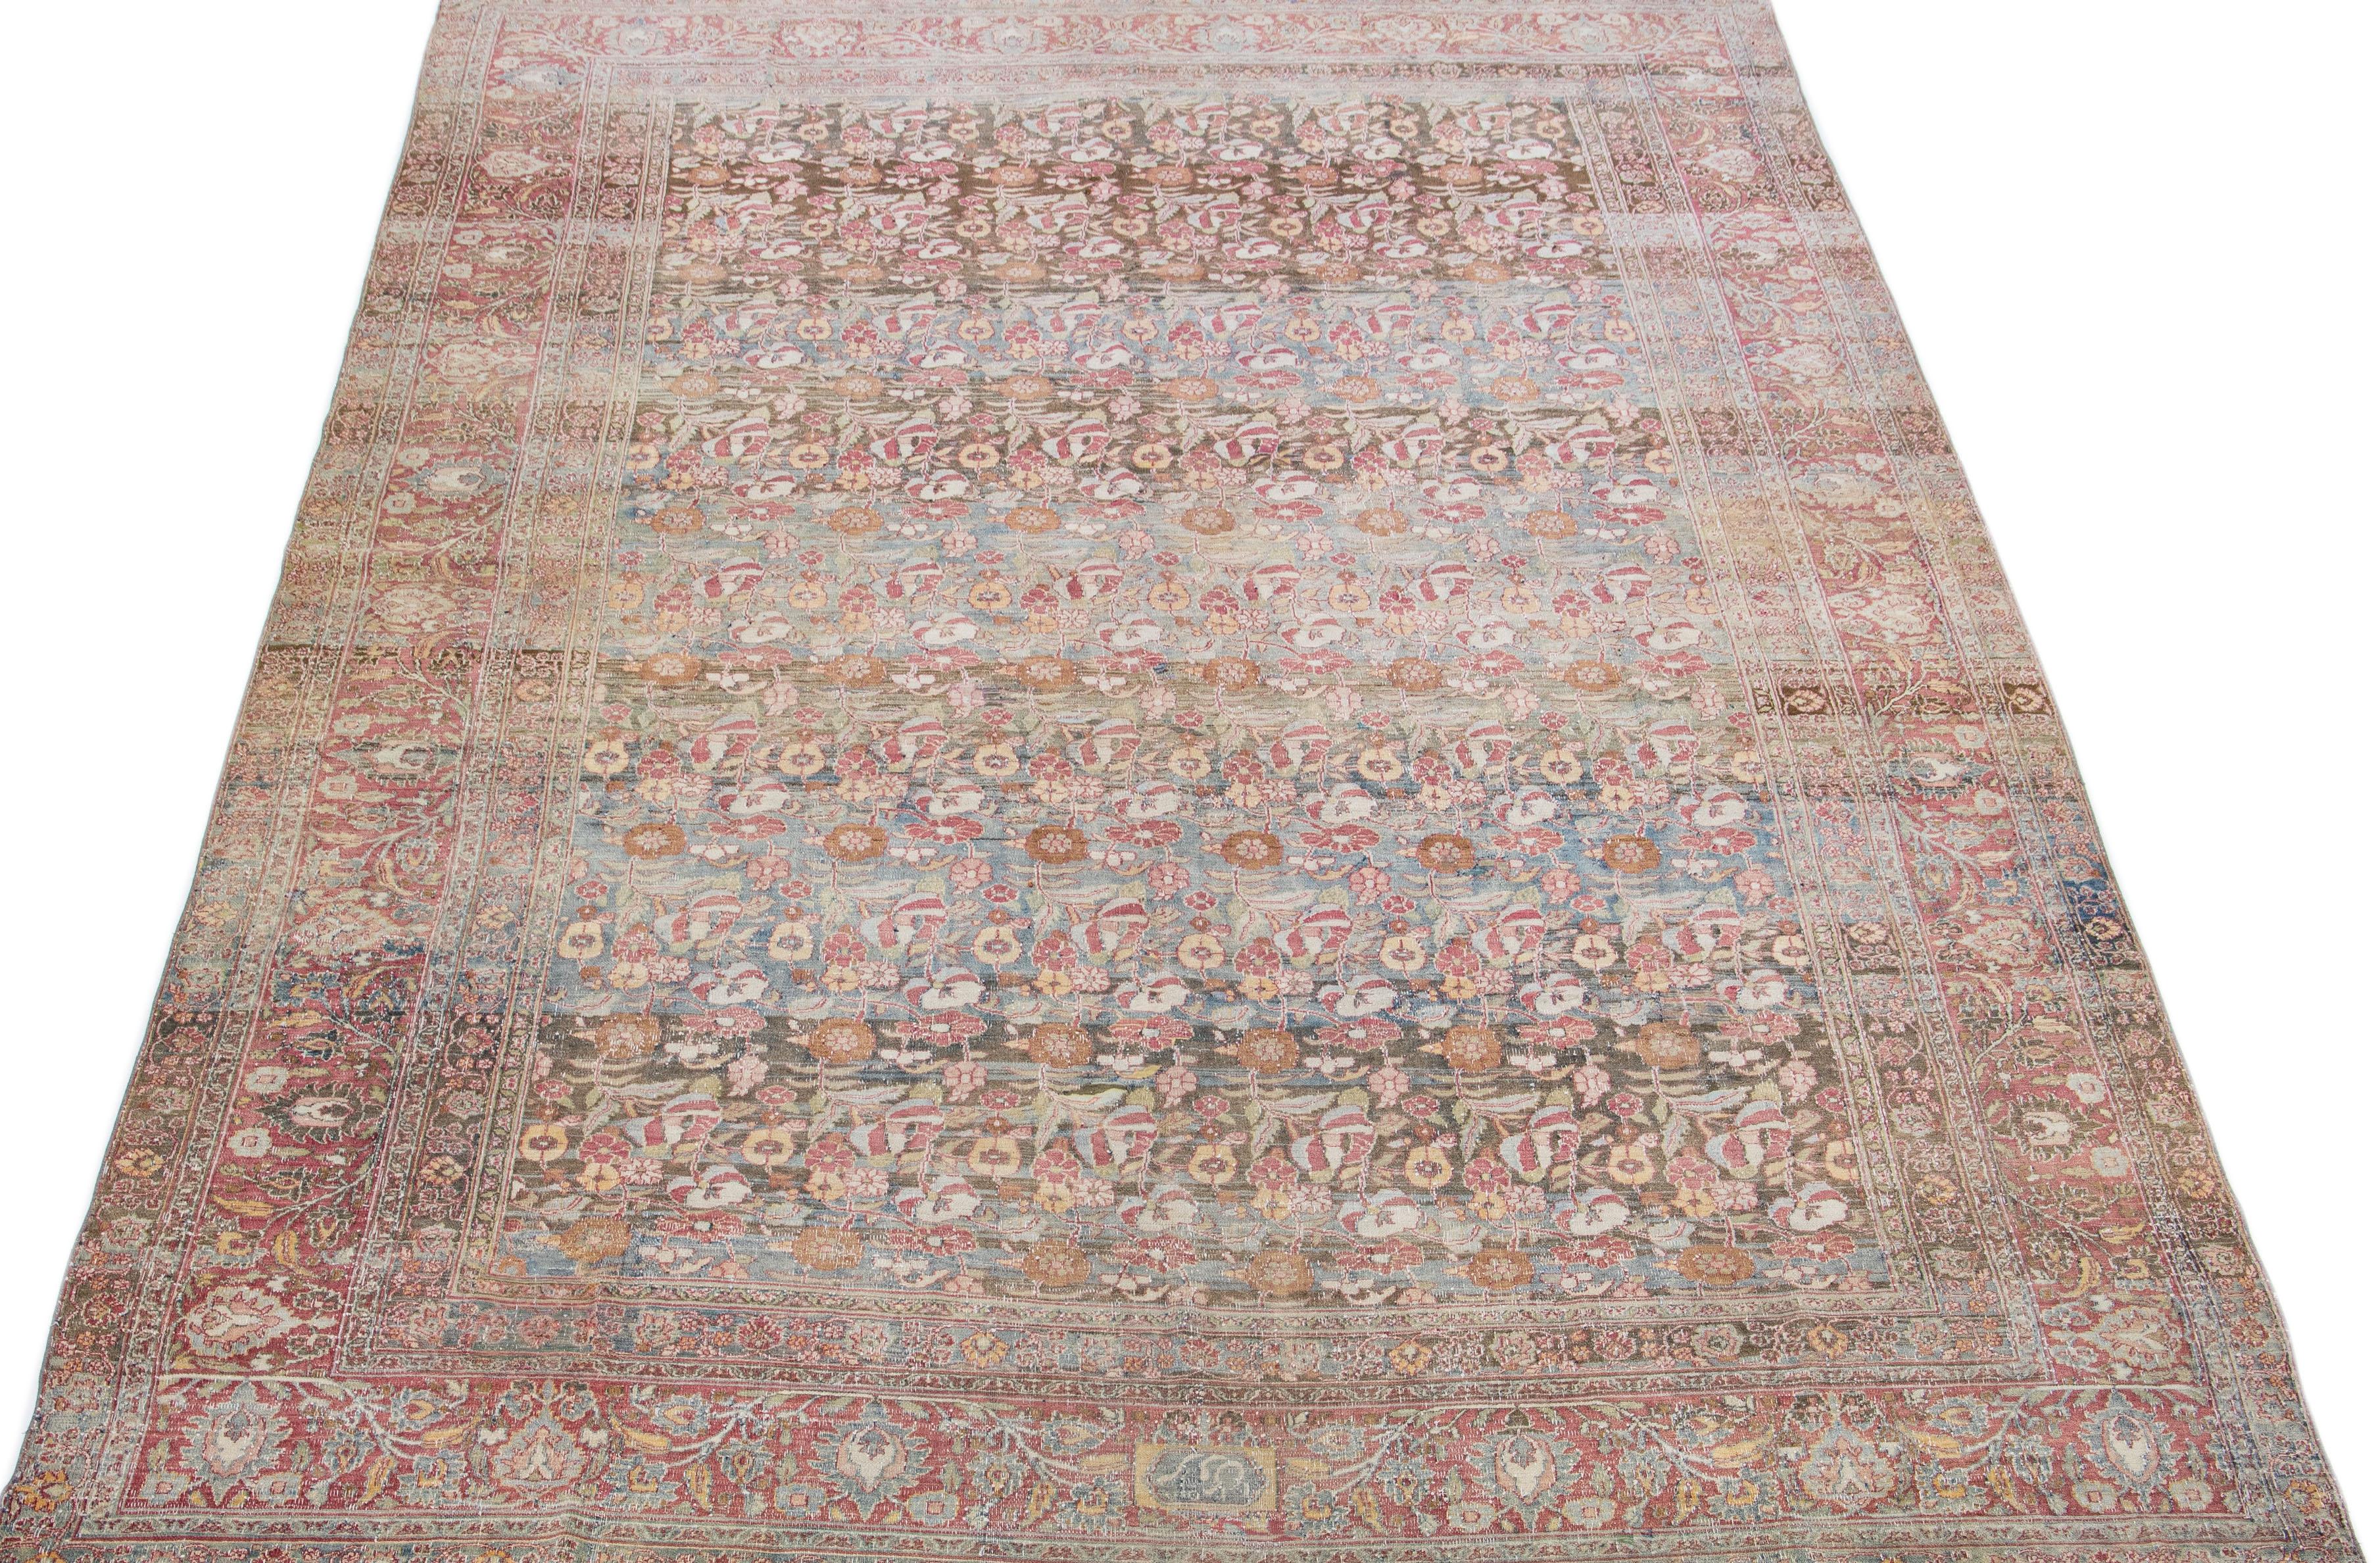 Magnifique tapis mahal en laine, noué à la main et de grande taille, avec un champ bleu. Ce tapis persan présente des accents rouges, bruns et bleus et un motif floral sur toute sa surface. 

Ce tapis mesure 9'3